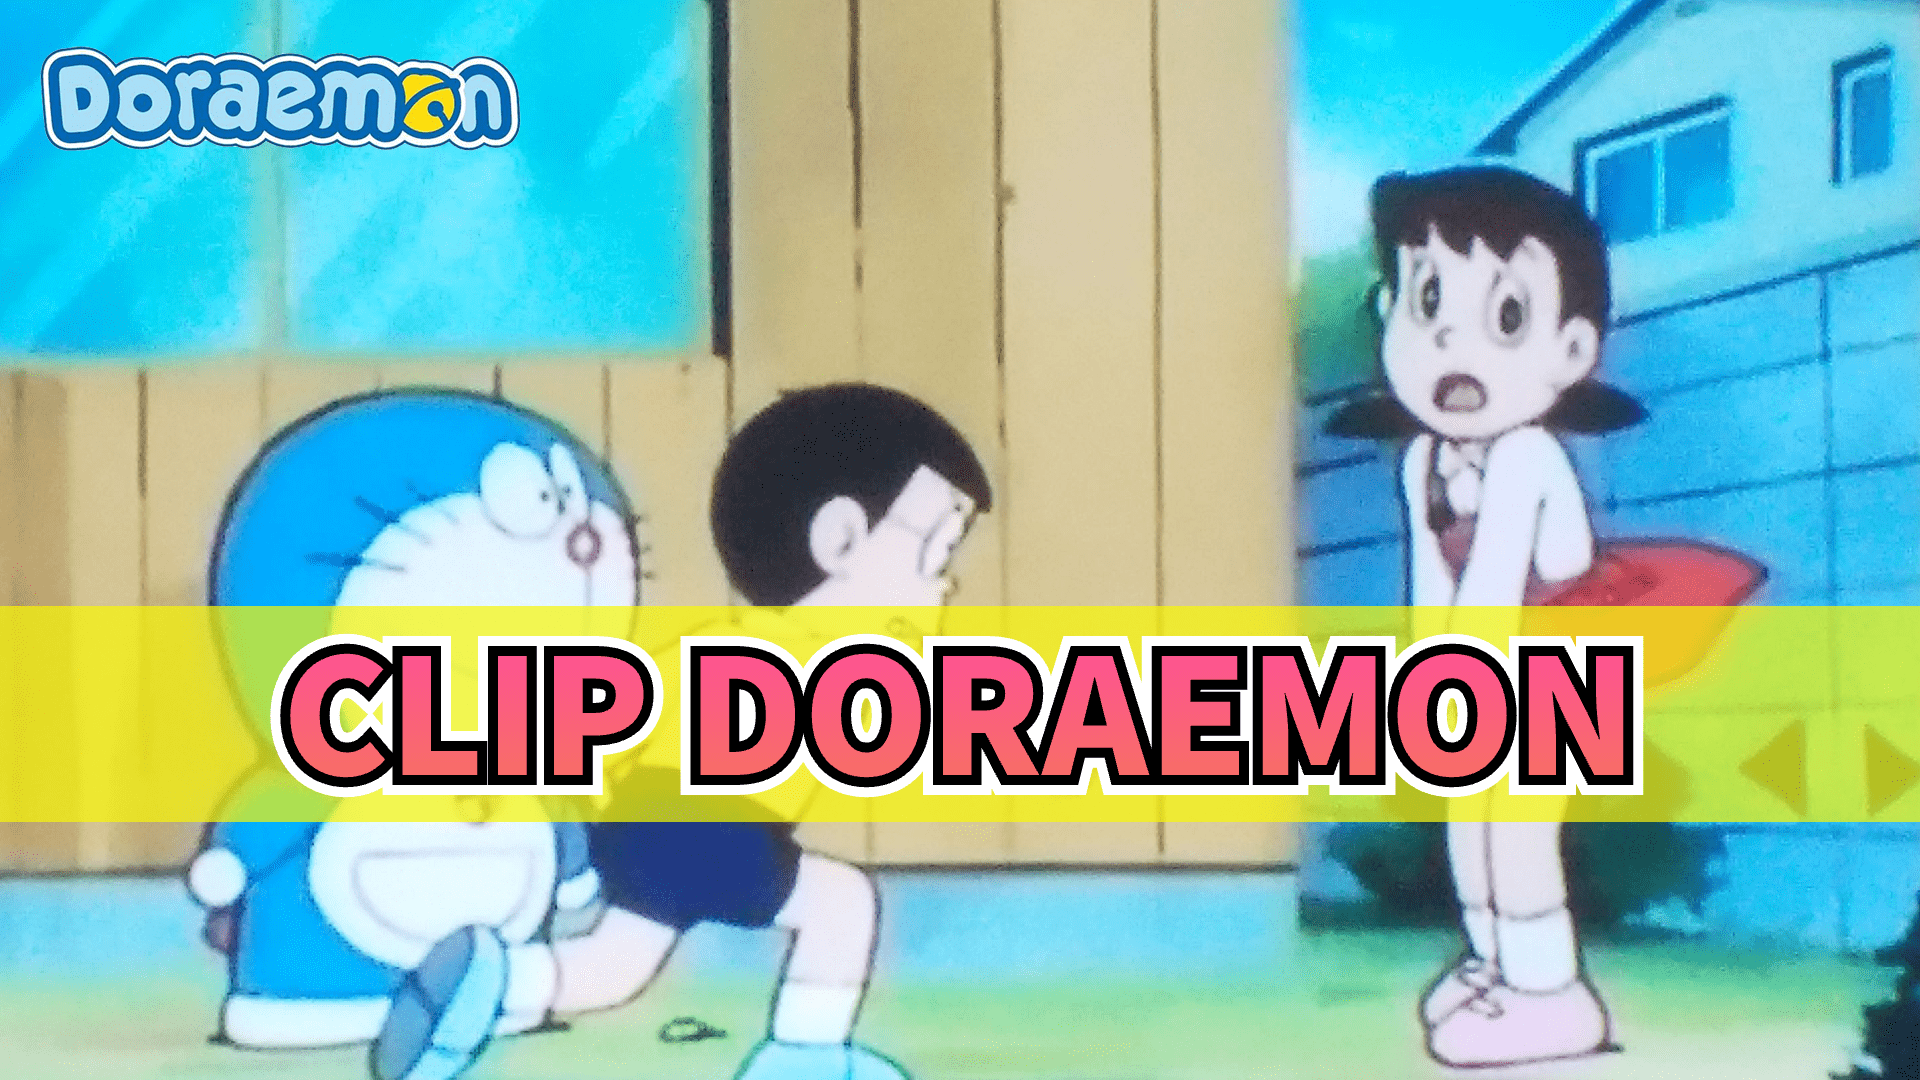 Review Doraemon  Đàn Cá Thu Đao Của Nobita Chui Vào Váy Shizuka   CHIHEOXINH  979  YouTube